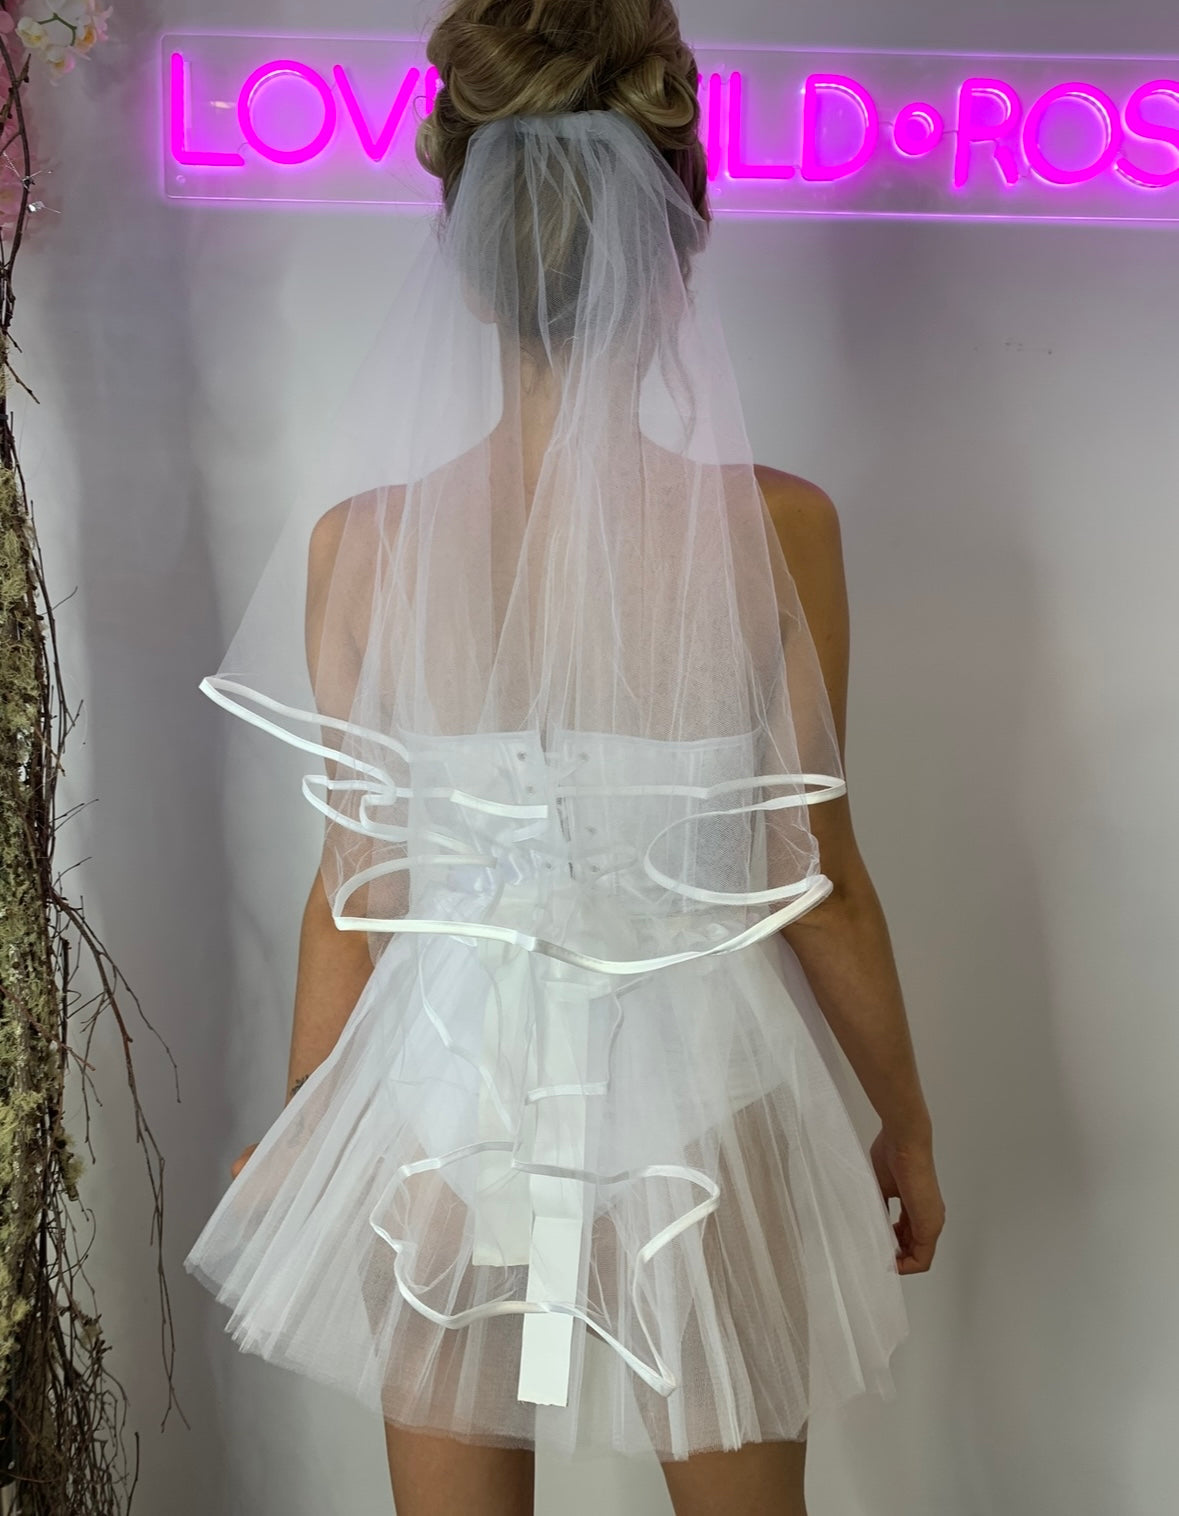 Bride Costume